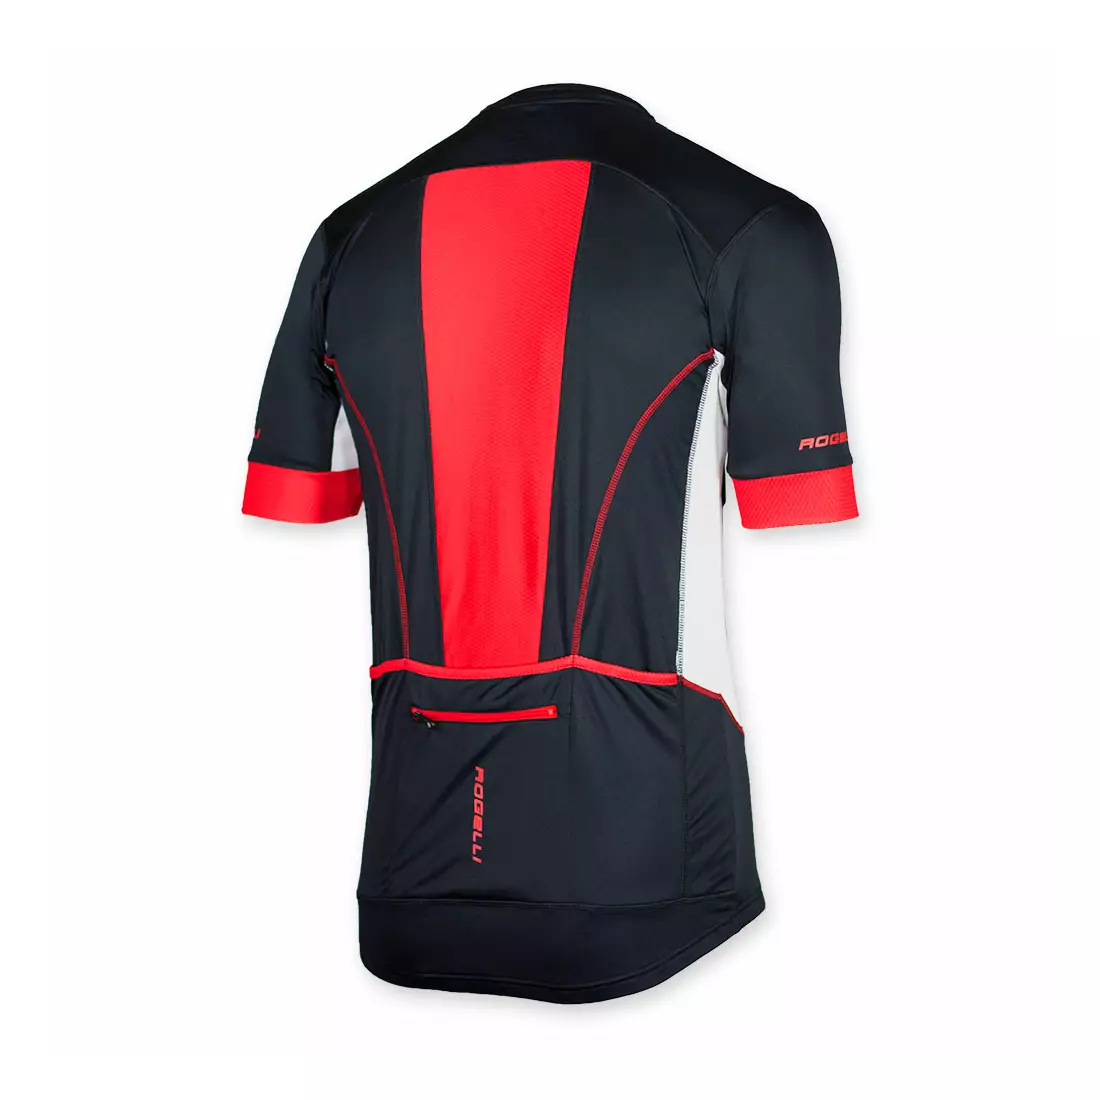 ROGELLI PONZA pánský cyklistický dres černo-červený